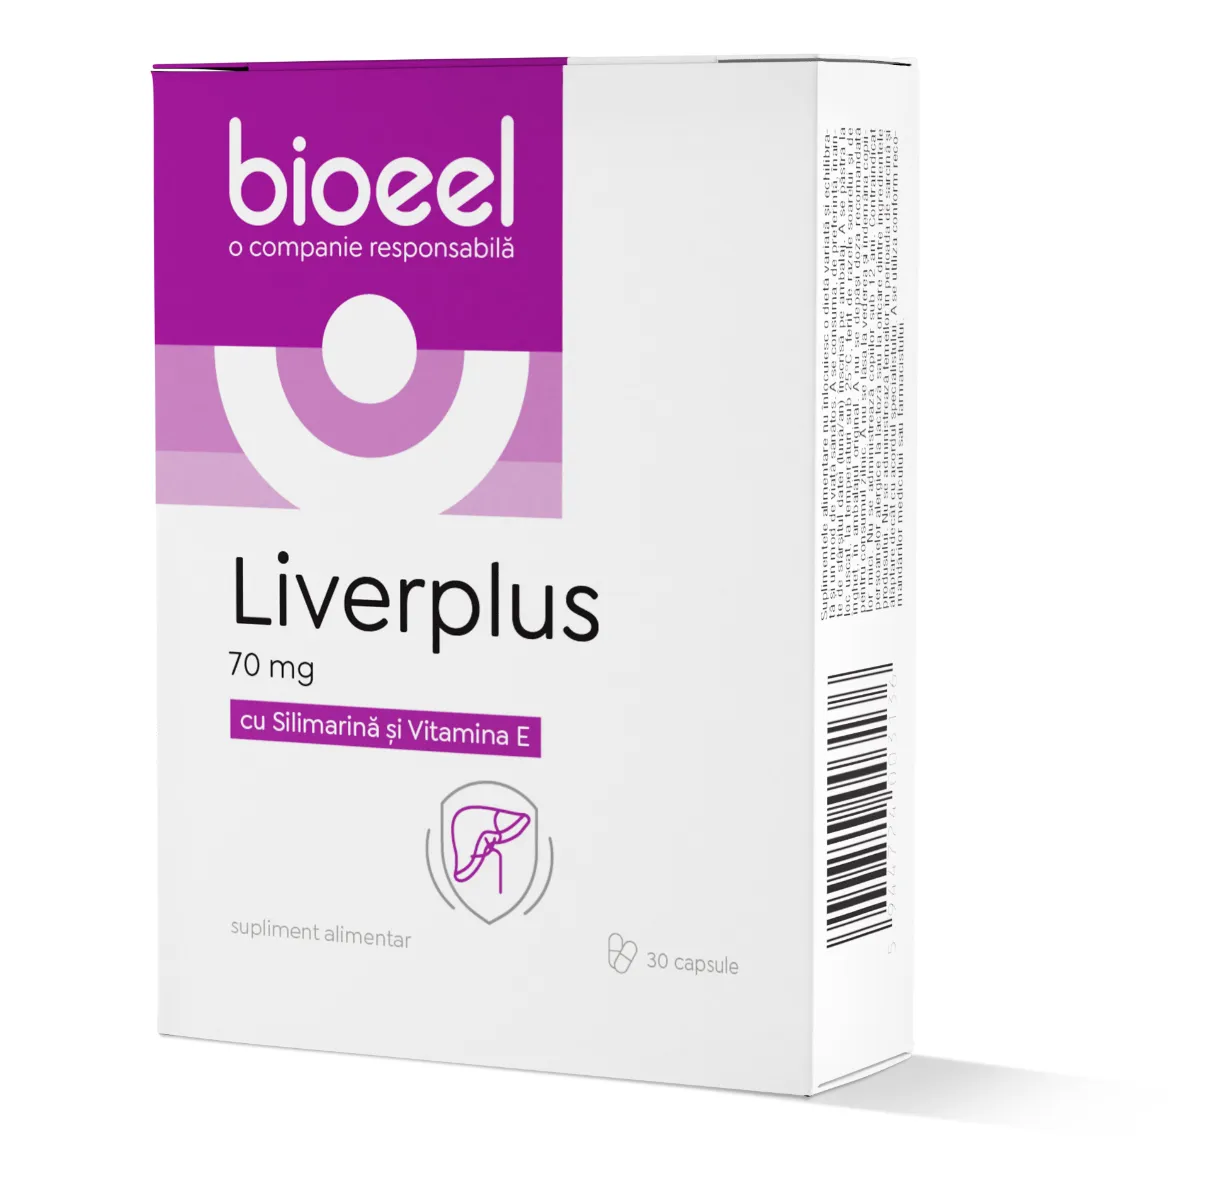 Liverplus 70mg, 80 capsule, Bioeel 